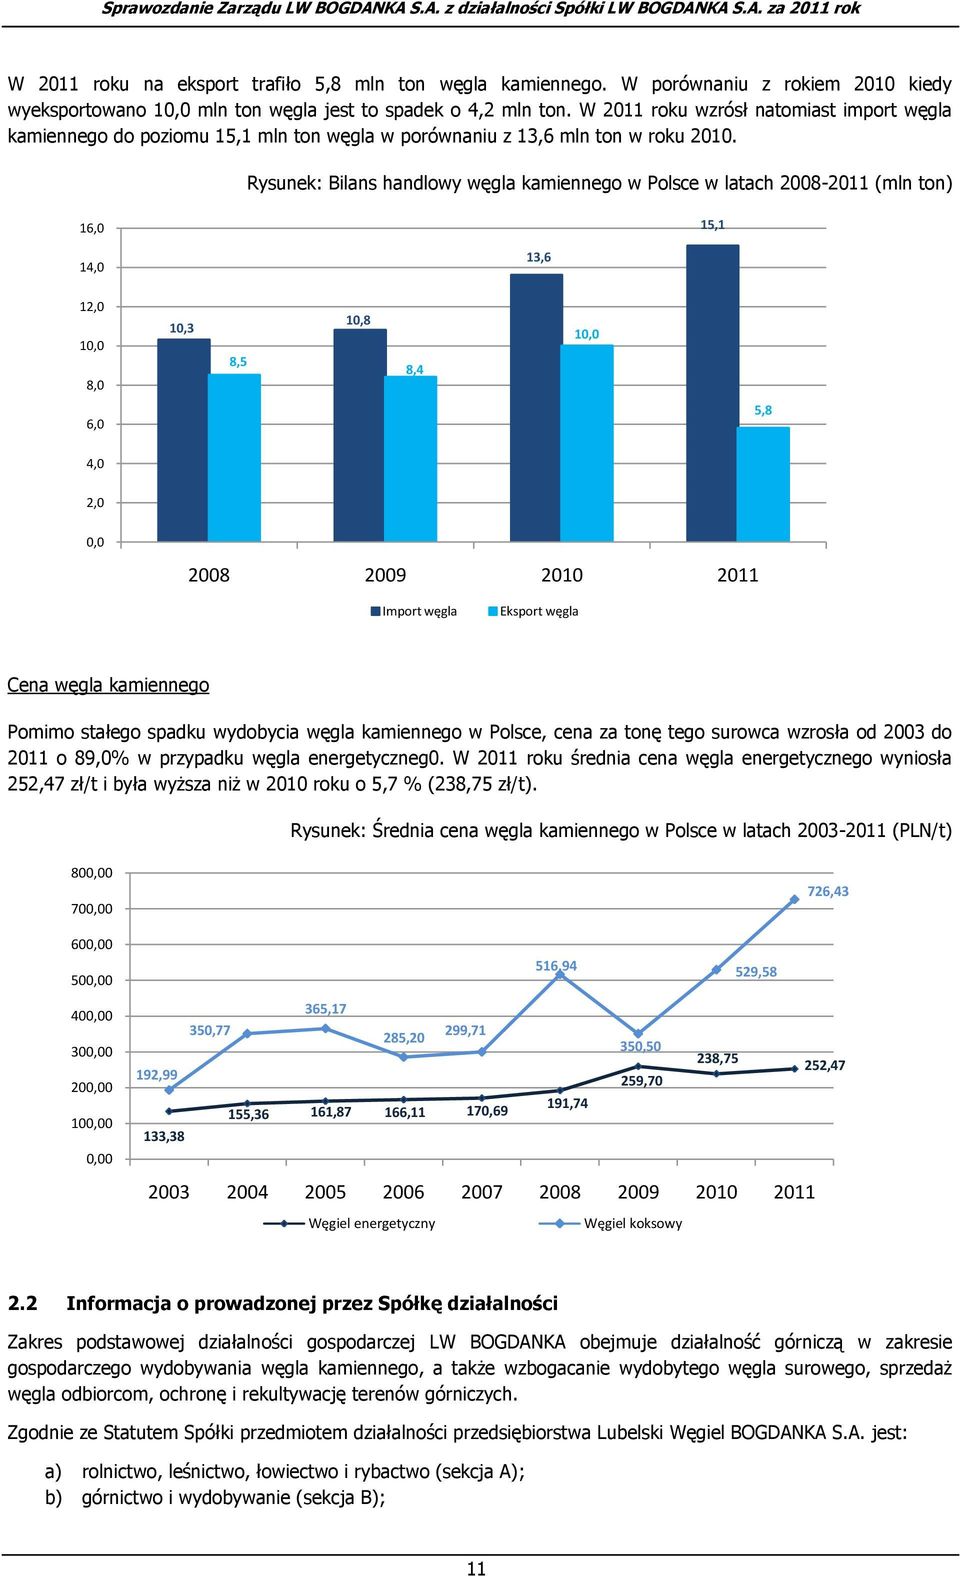 Rysunek: Bilans handlowy węgla kamiennego w Polsce w latach 2008-2011 (mln ton) 16,0 15,1 14,0 13,6 12,0 10,0 8,0 10,3 8,5 10,8 8,4 10,0 6,0 5,8 4,0 2,0 0,0 2008 2009 2010 2011 Import węgla Eksport